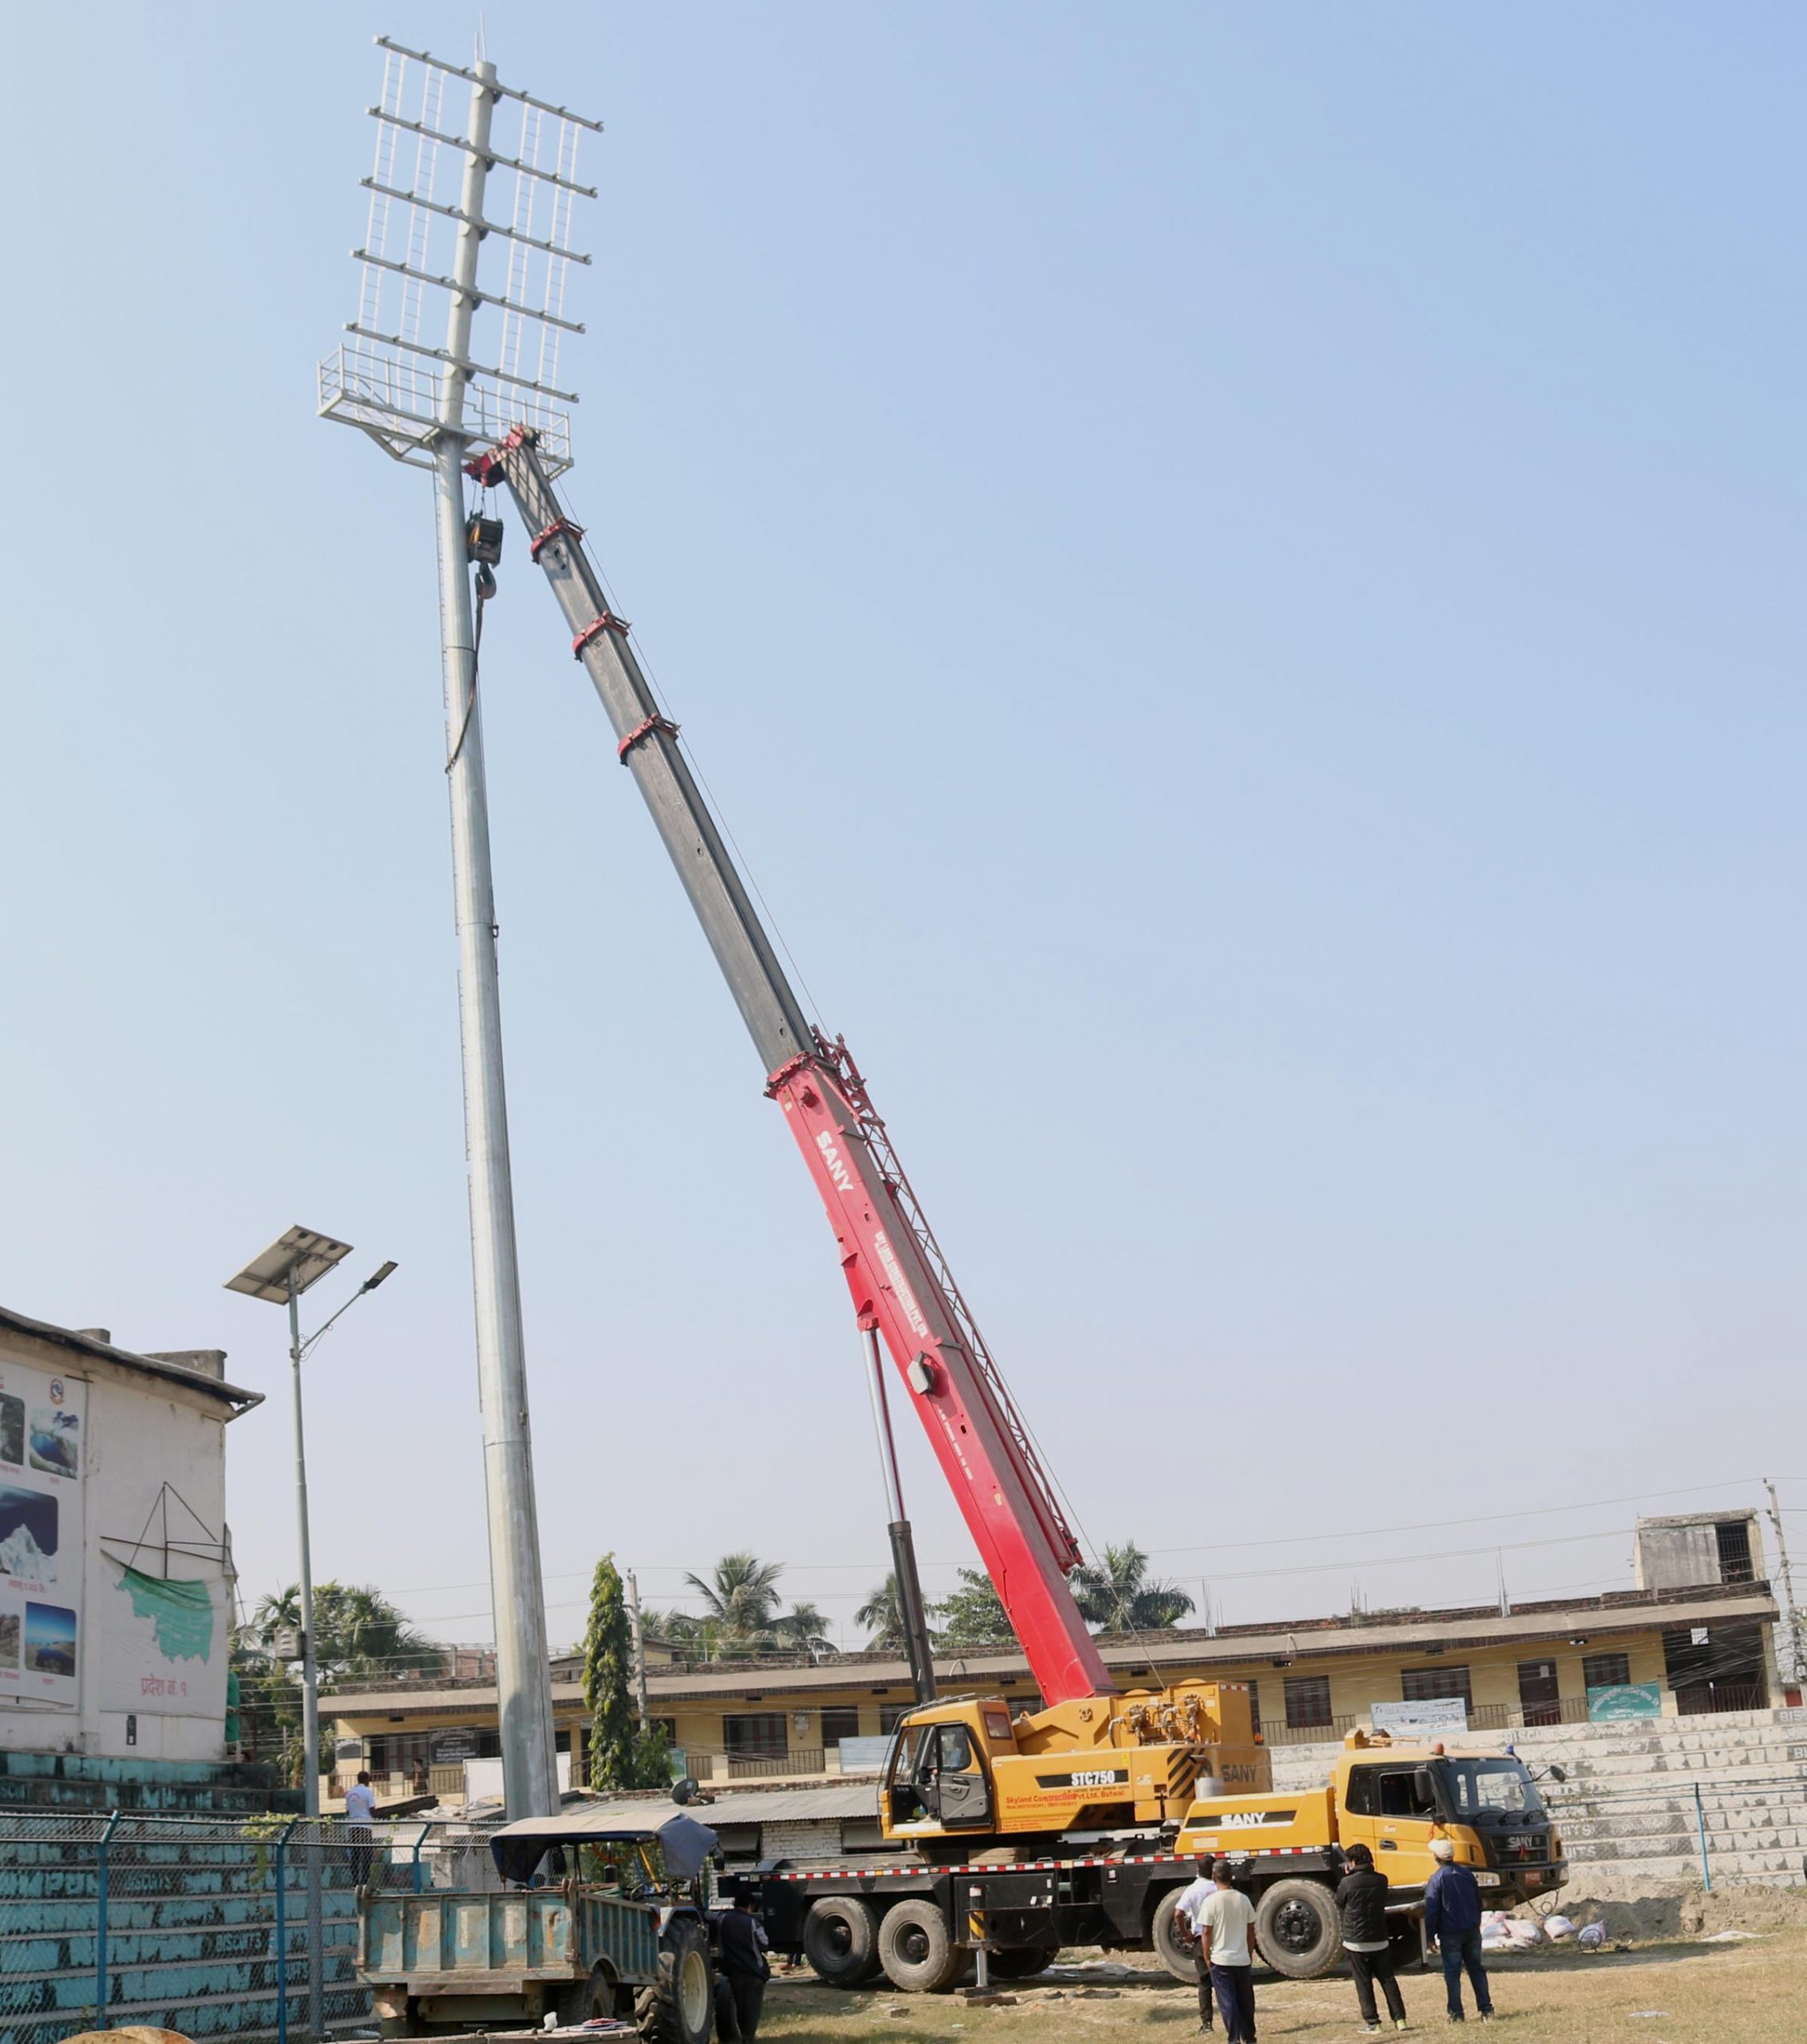 Floodlights installed at Biratnagar’s Sahid Maidan Stadium